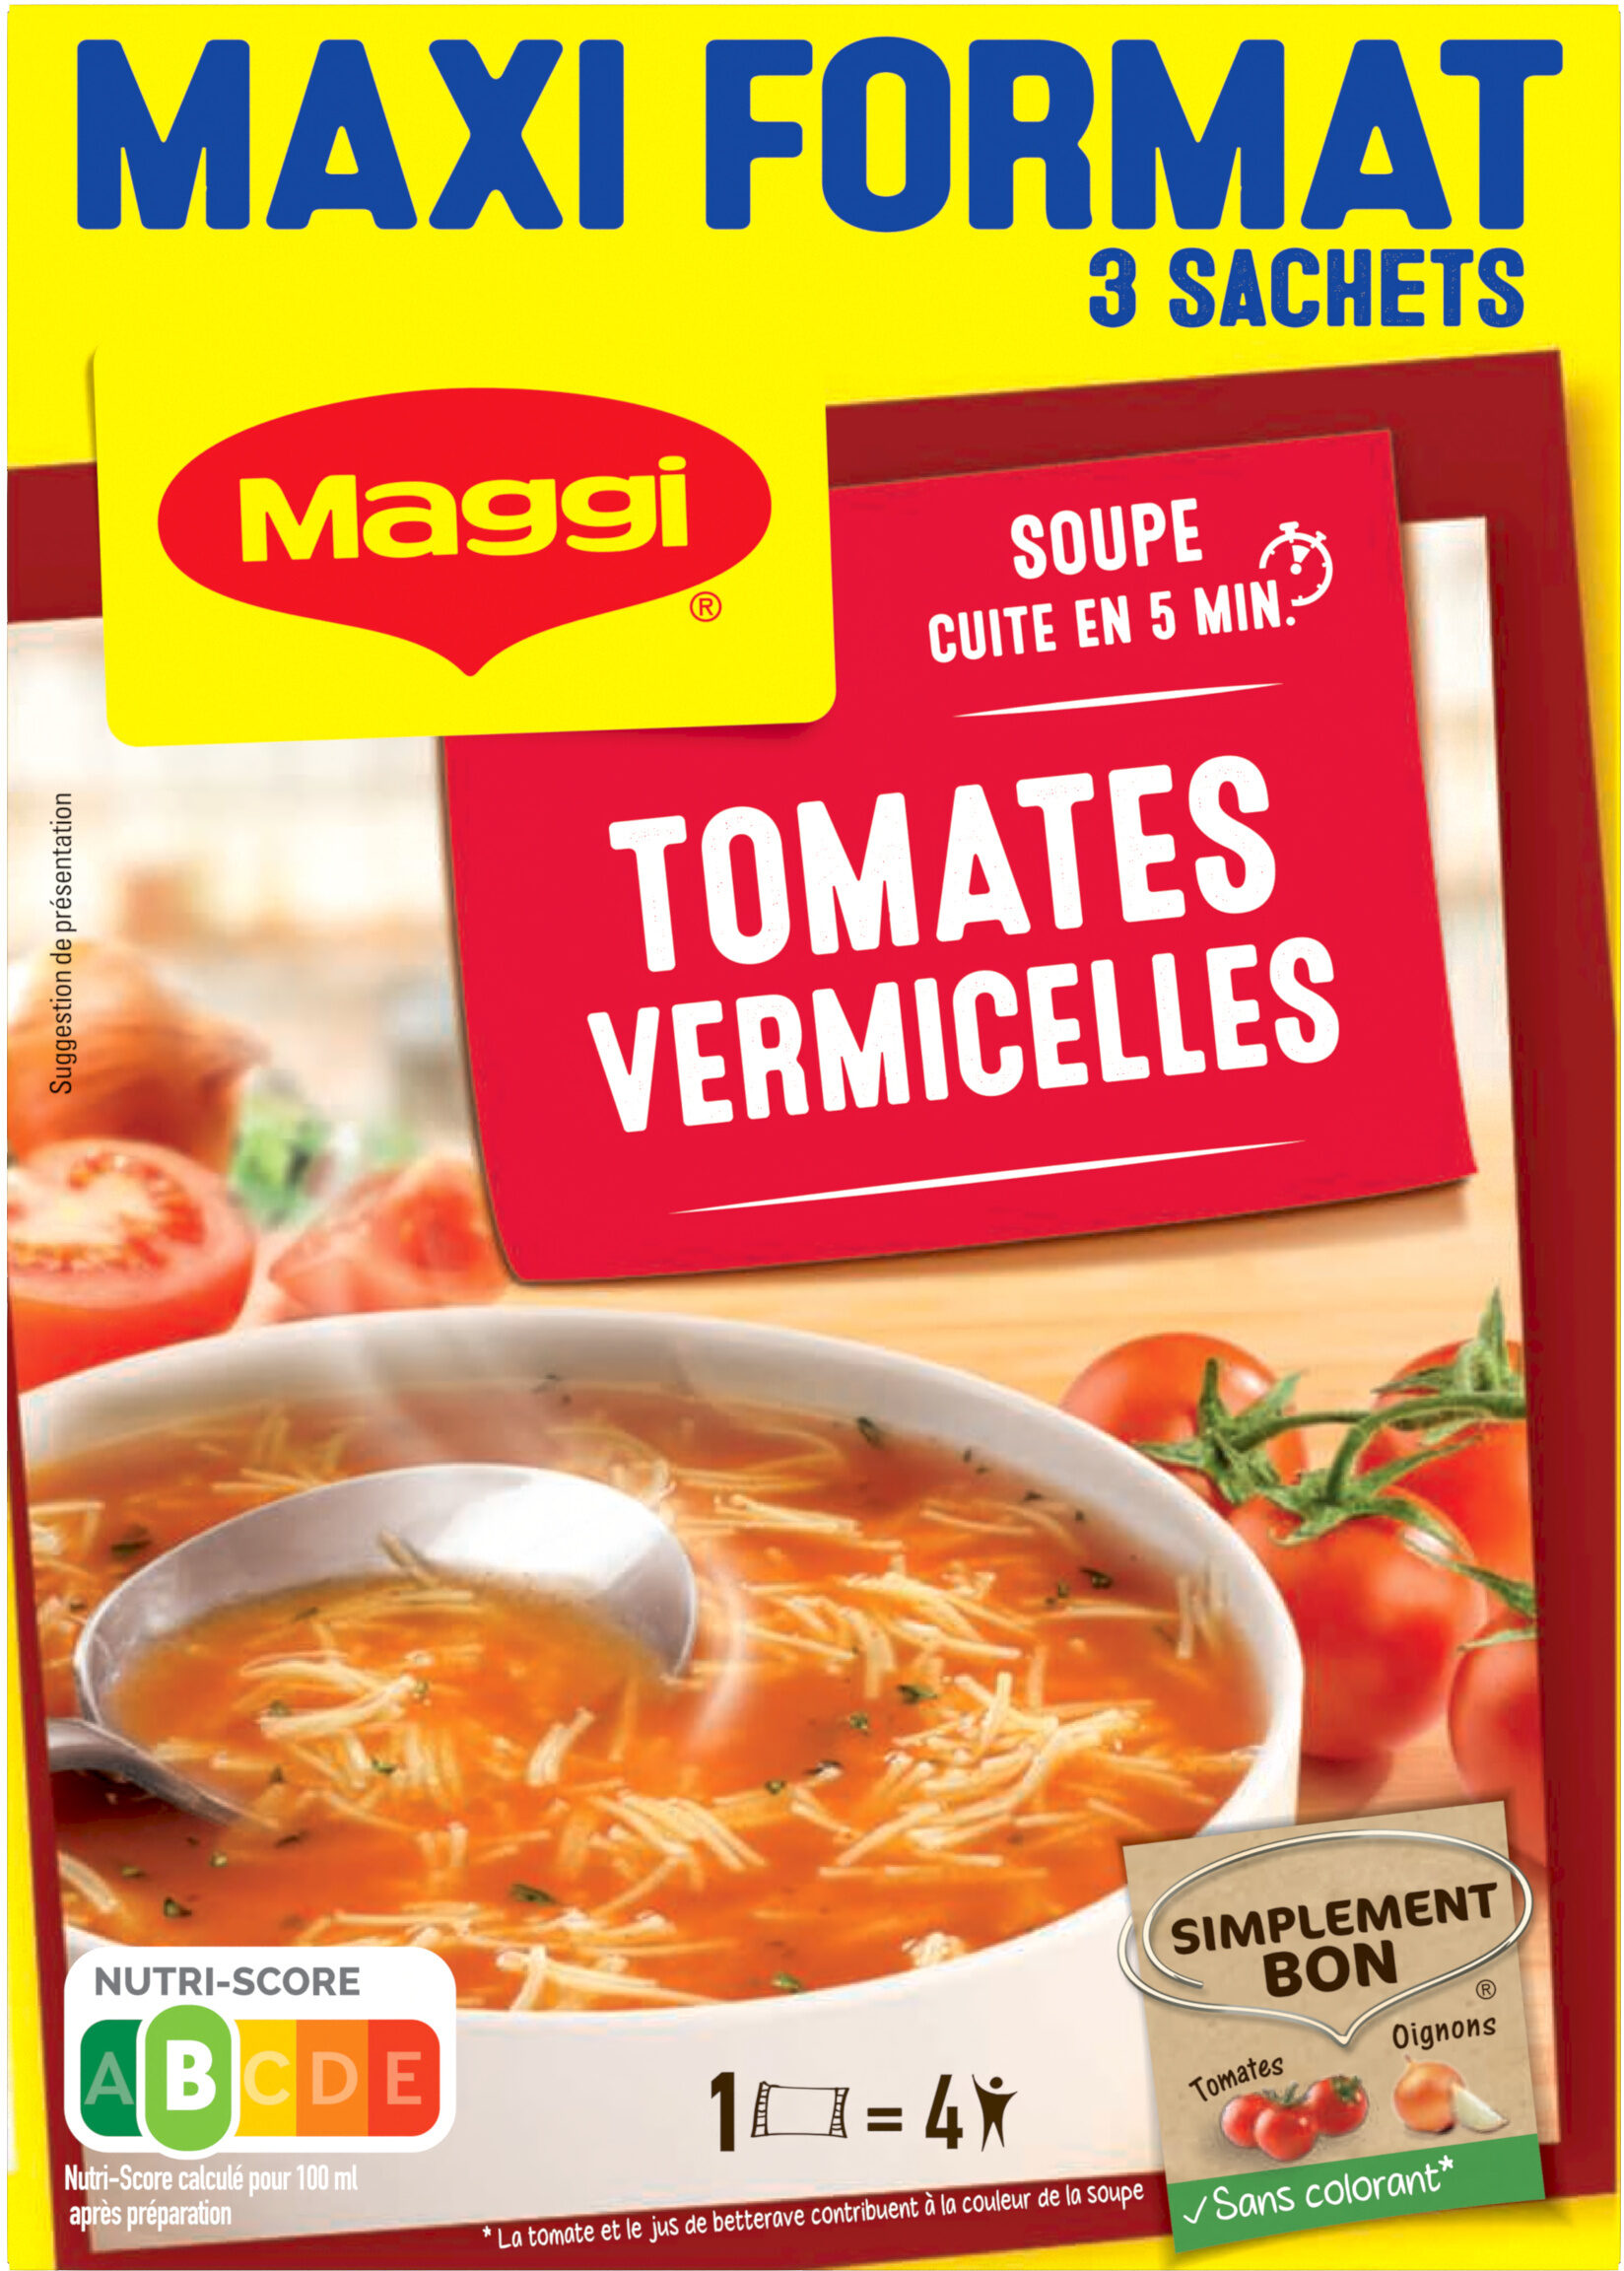 Soupe Tomates Vermicelles Maggi MAXI FORMAT 3 SACHETS - Produit